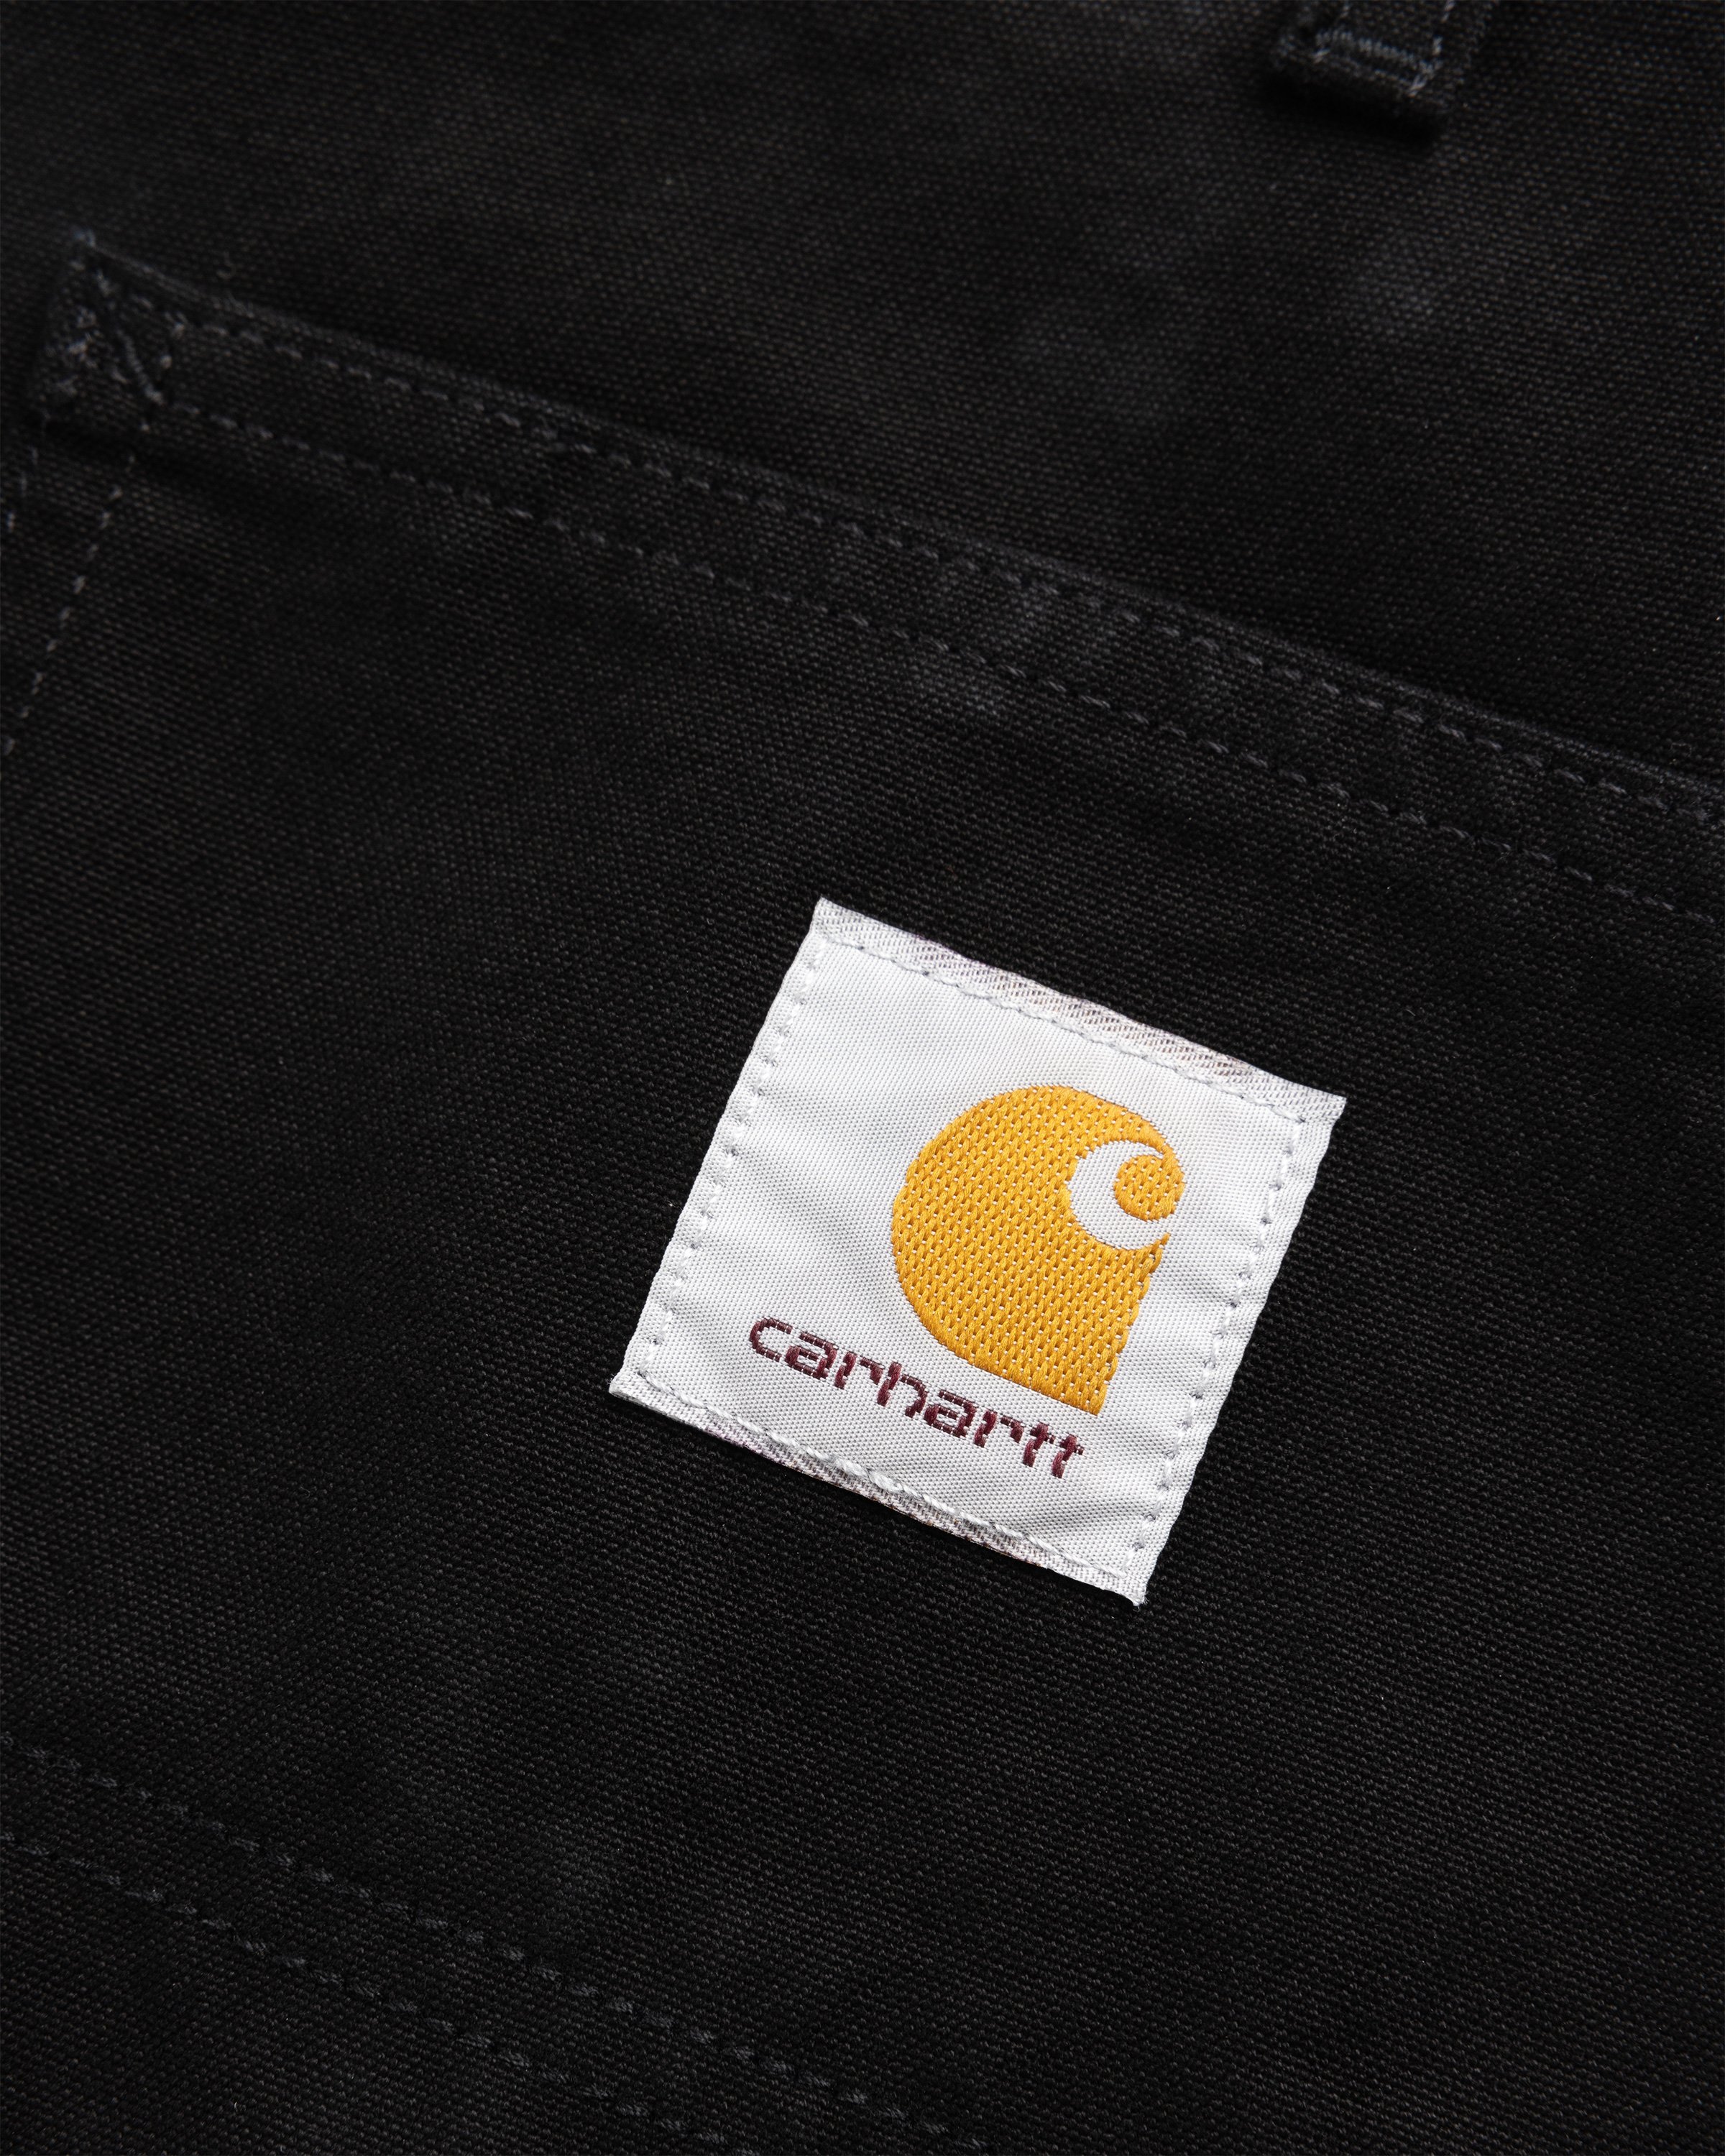 Carhartt WIP - Double Knee Short Black /rinsed - Clothing - Black - Image 7